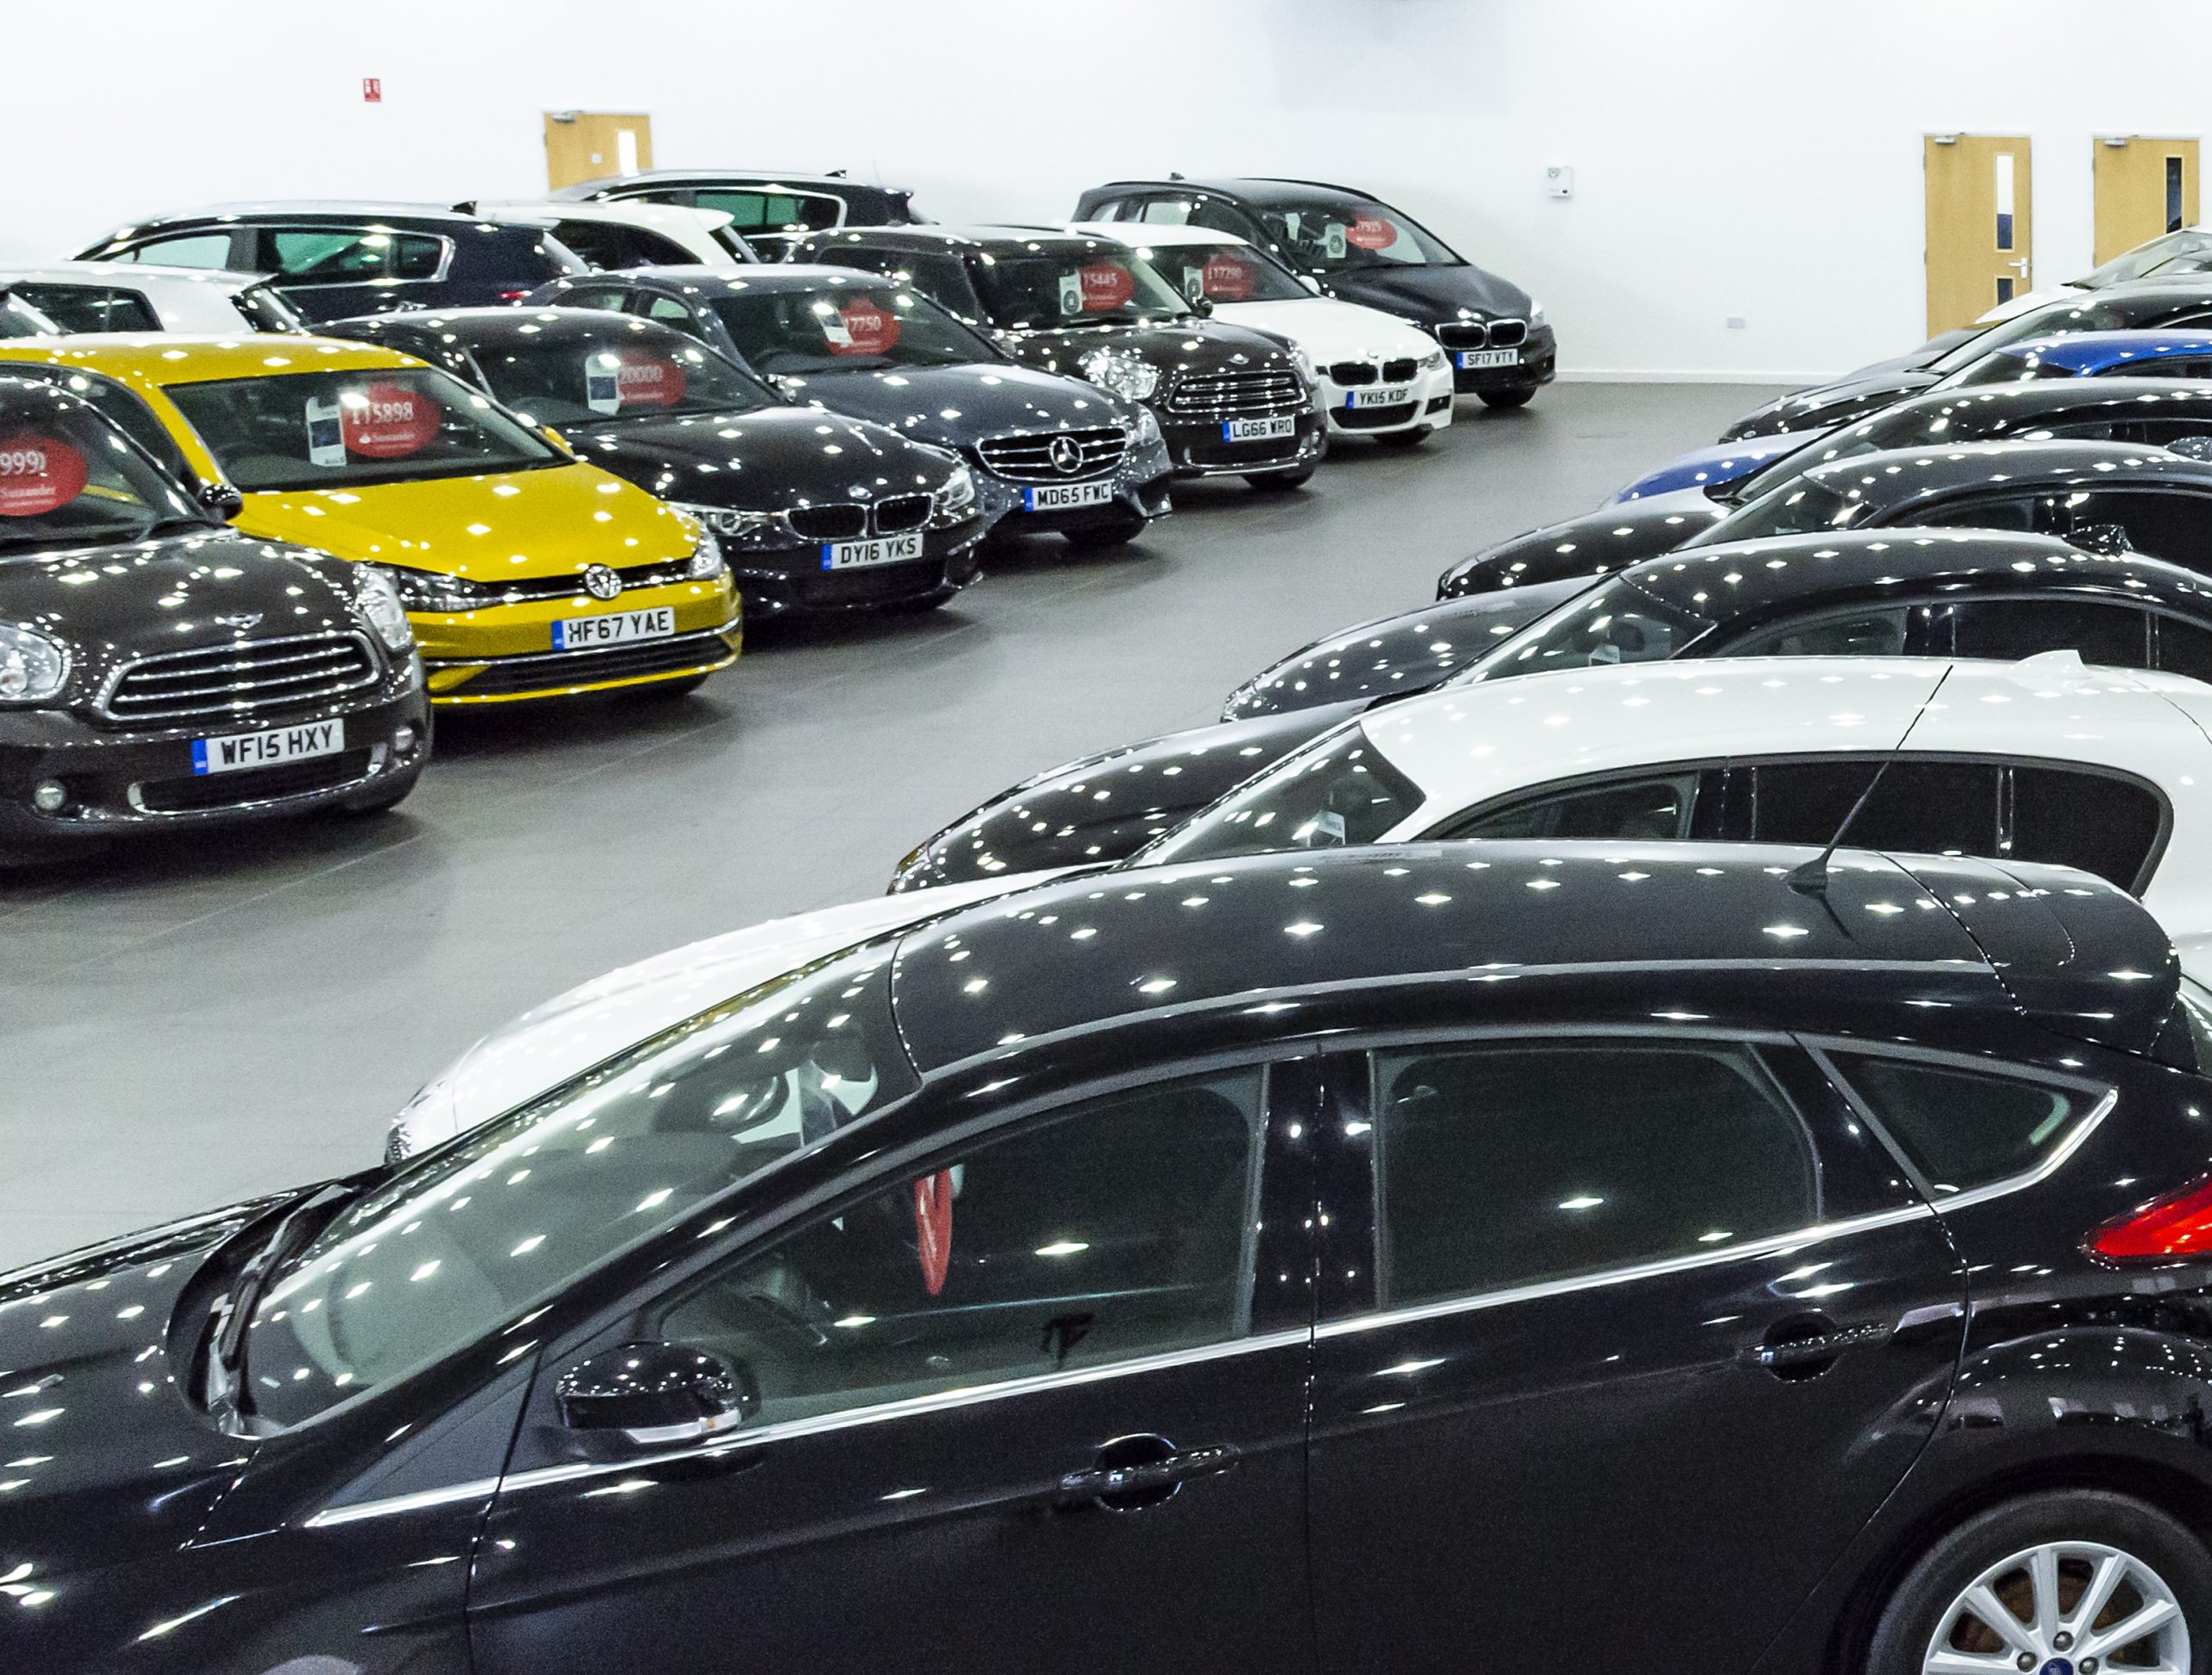 Top 15 Used Car Bargains Under £15k Revealed